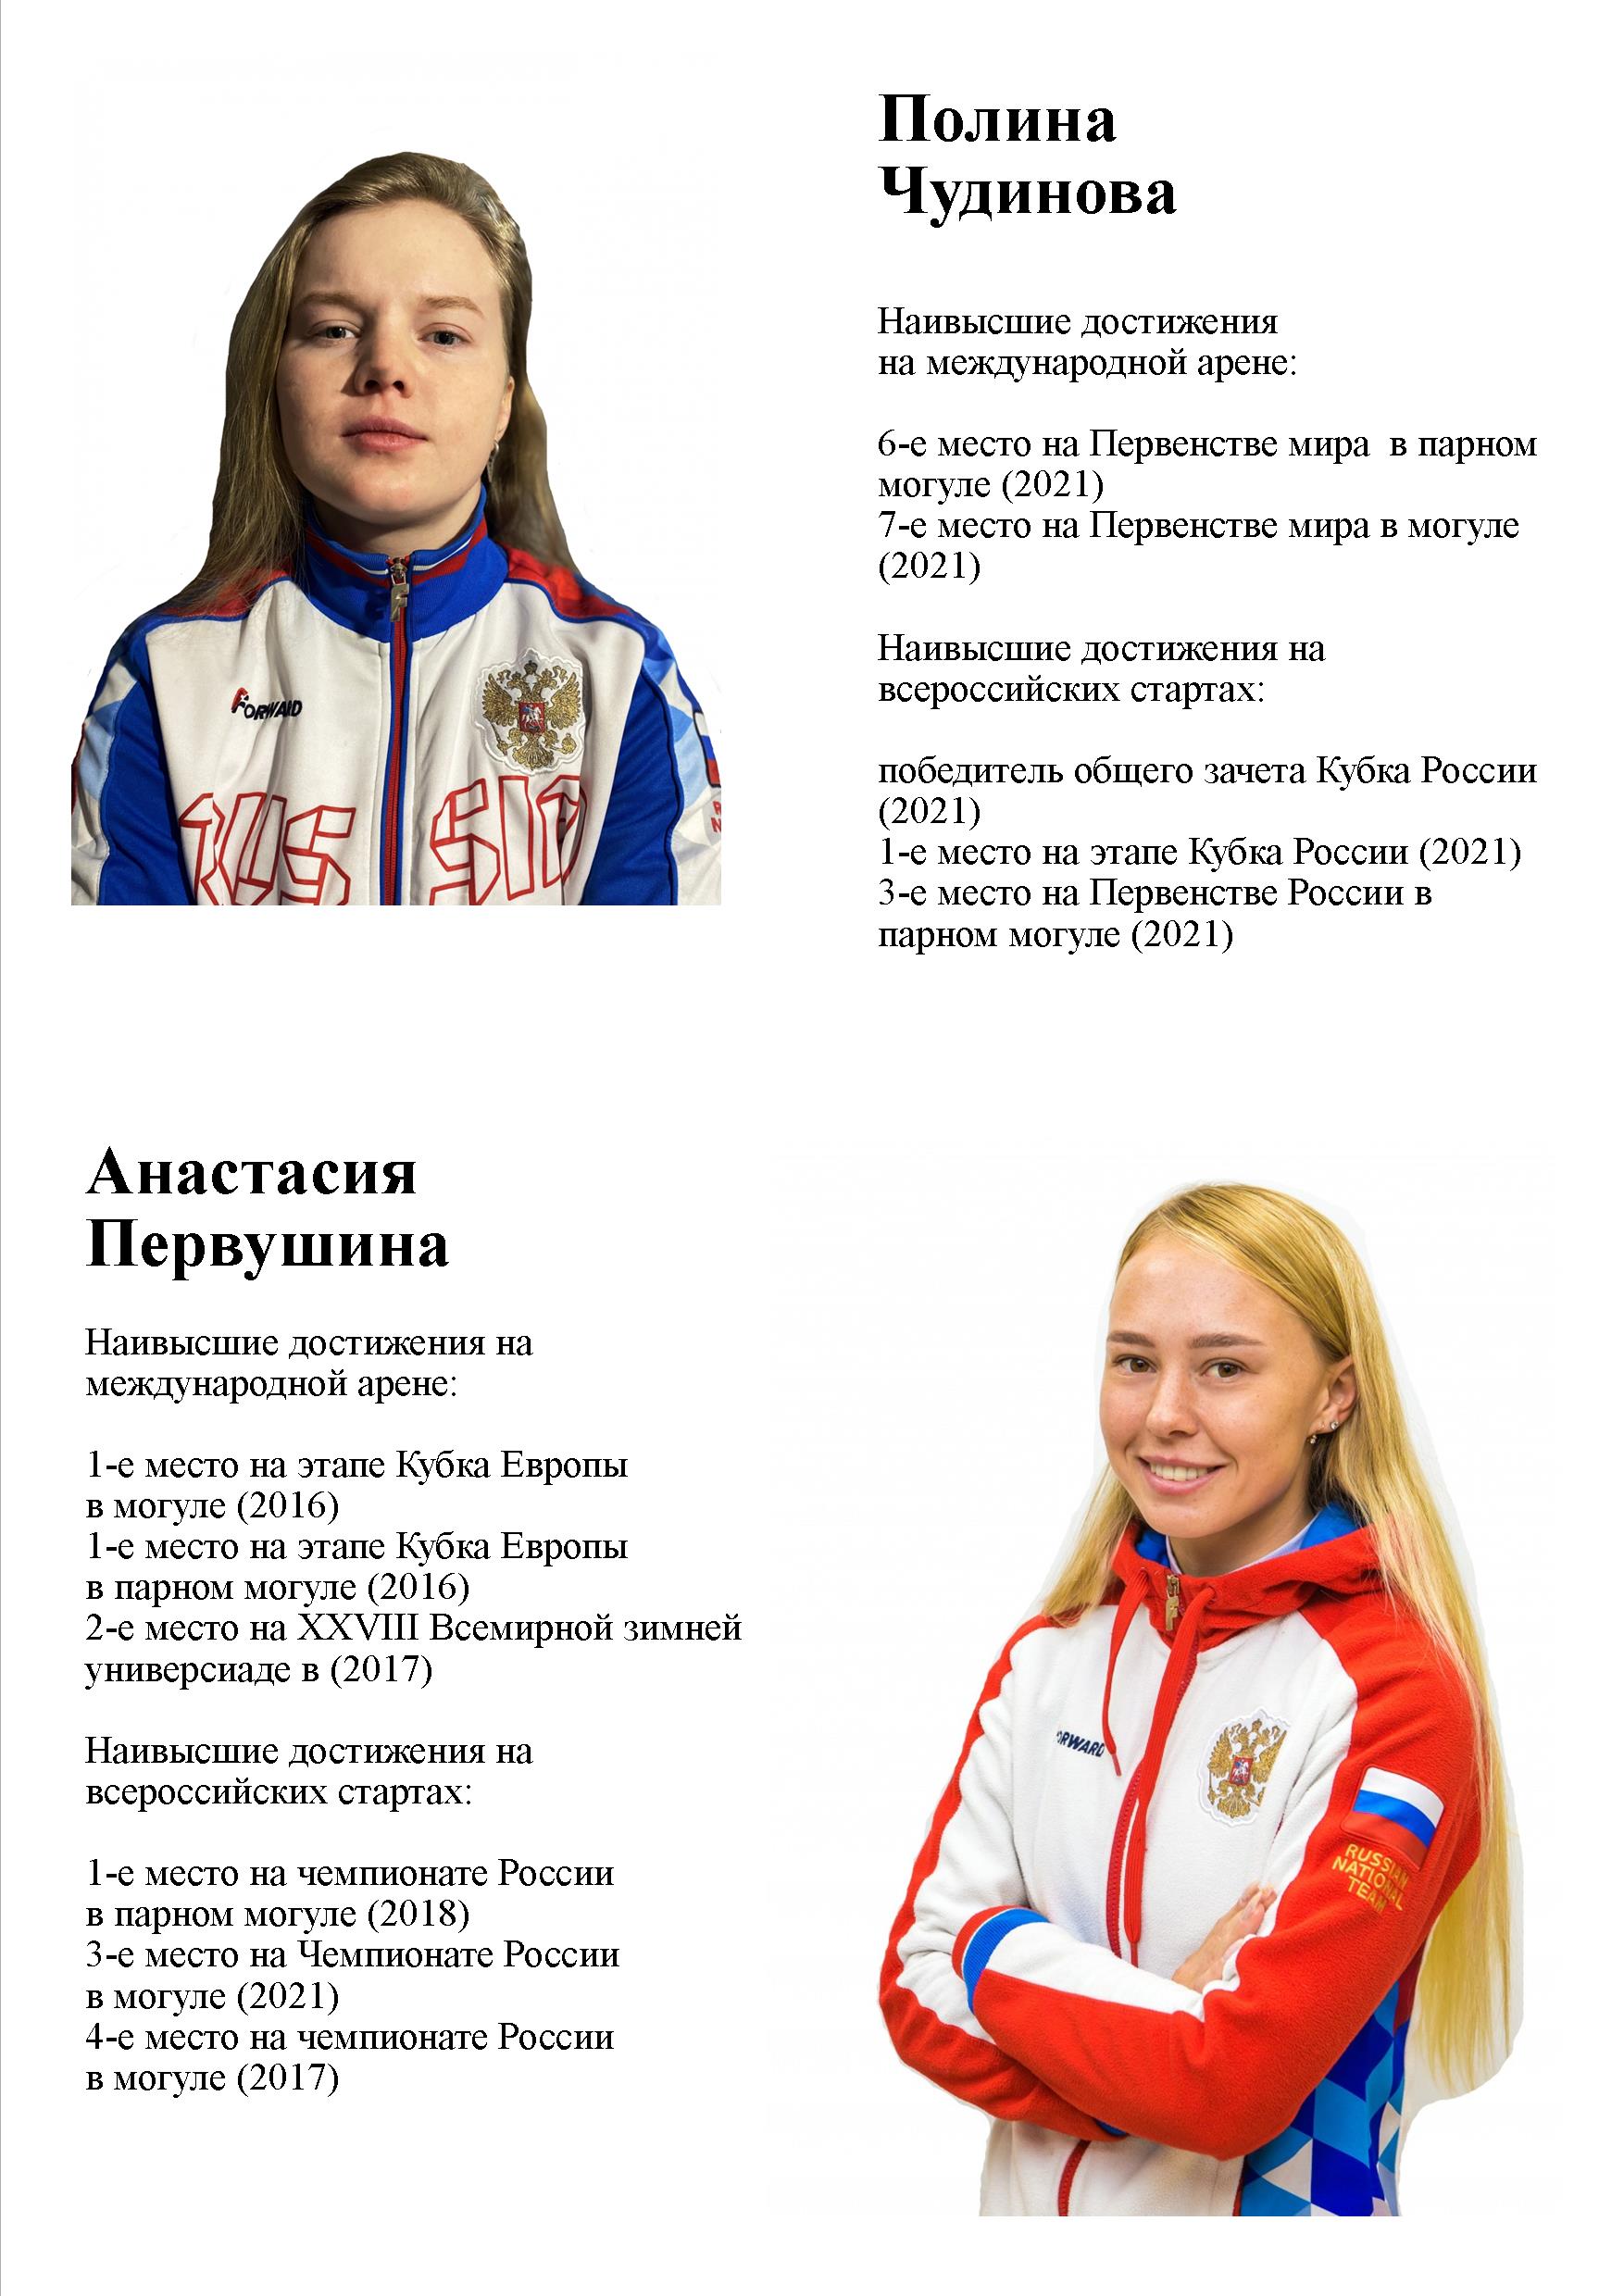 участницы Олимпийских игр 2022 по фристайлу в дисциплине могул - Полина Чудинова и Анастасия Первушина